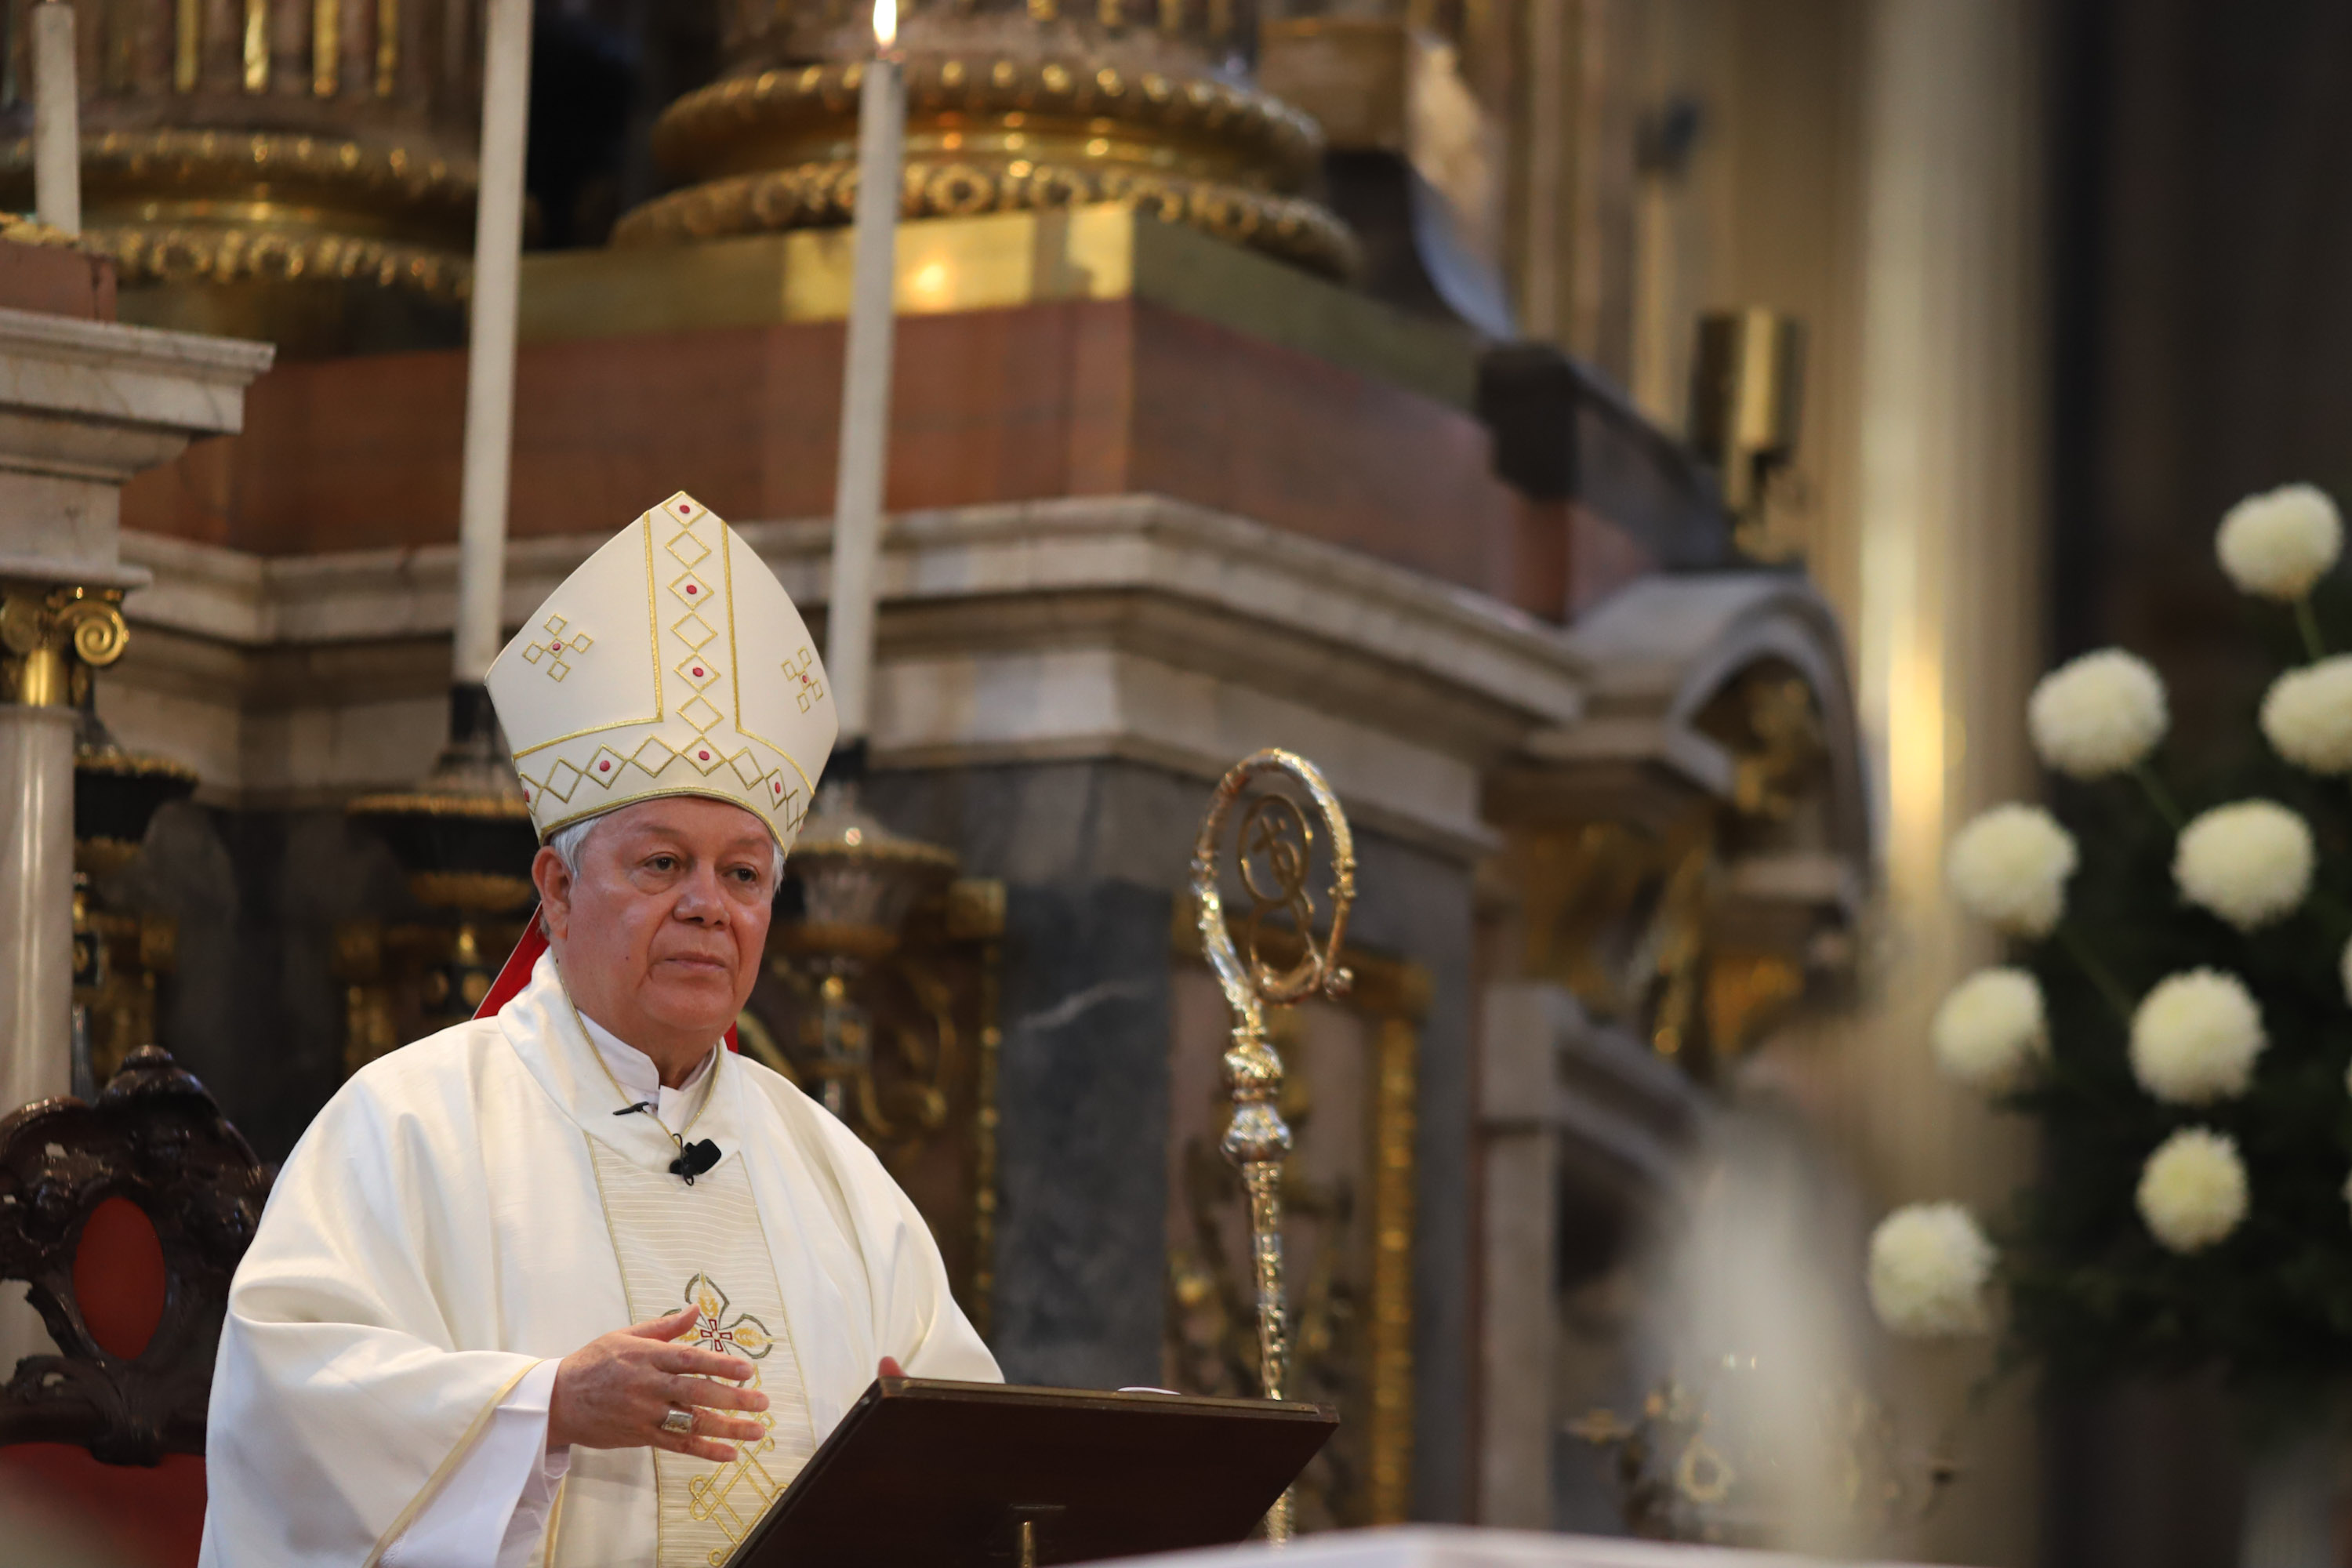 Arzobispo afirma que hay quienes claman falsos valores